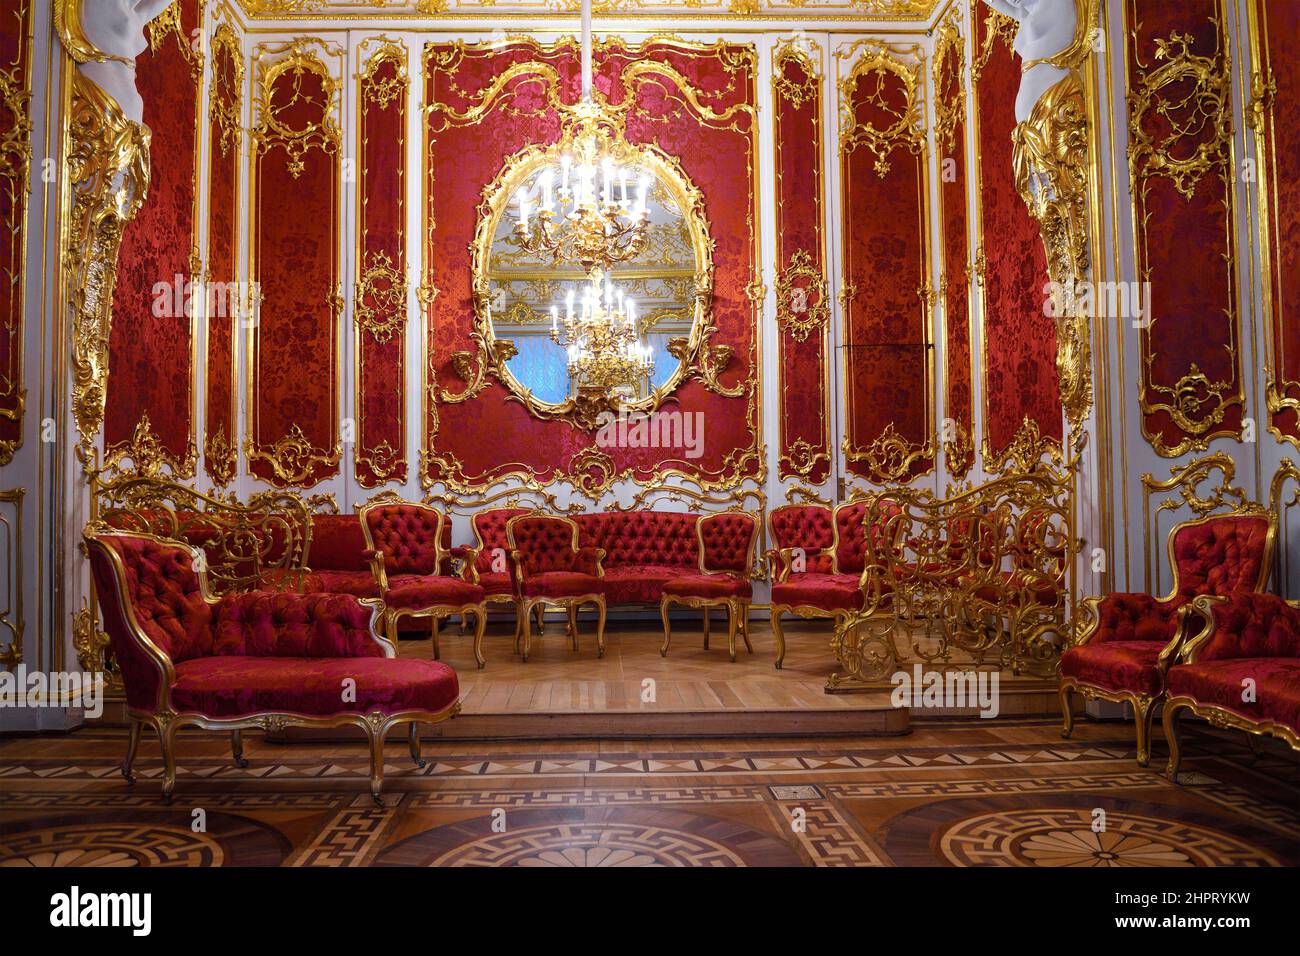 SAN PETERSBURGO, RUSIA - 17 DE FEBRERO de 2022: Interior del boudo de la emperatriz rusa Maria Alexandrovna (esposa del emperador Alejandro II) Foto de stock